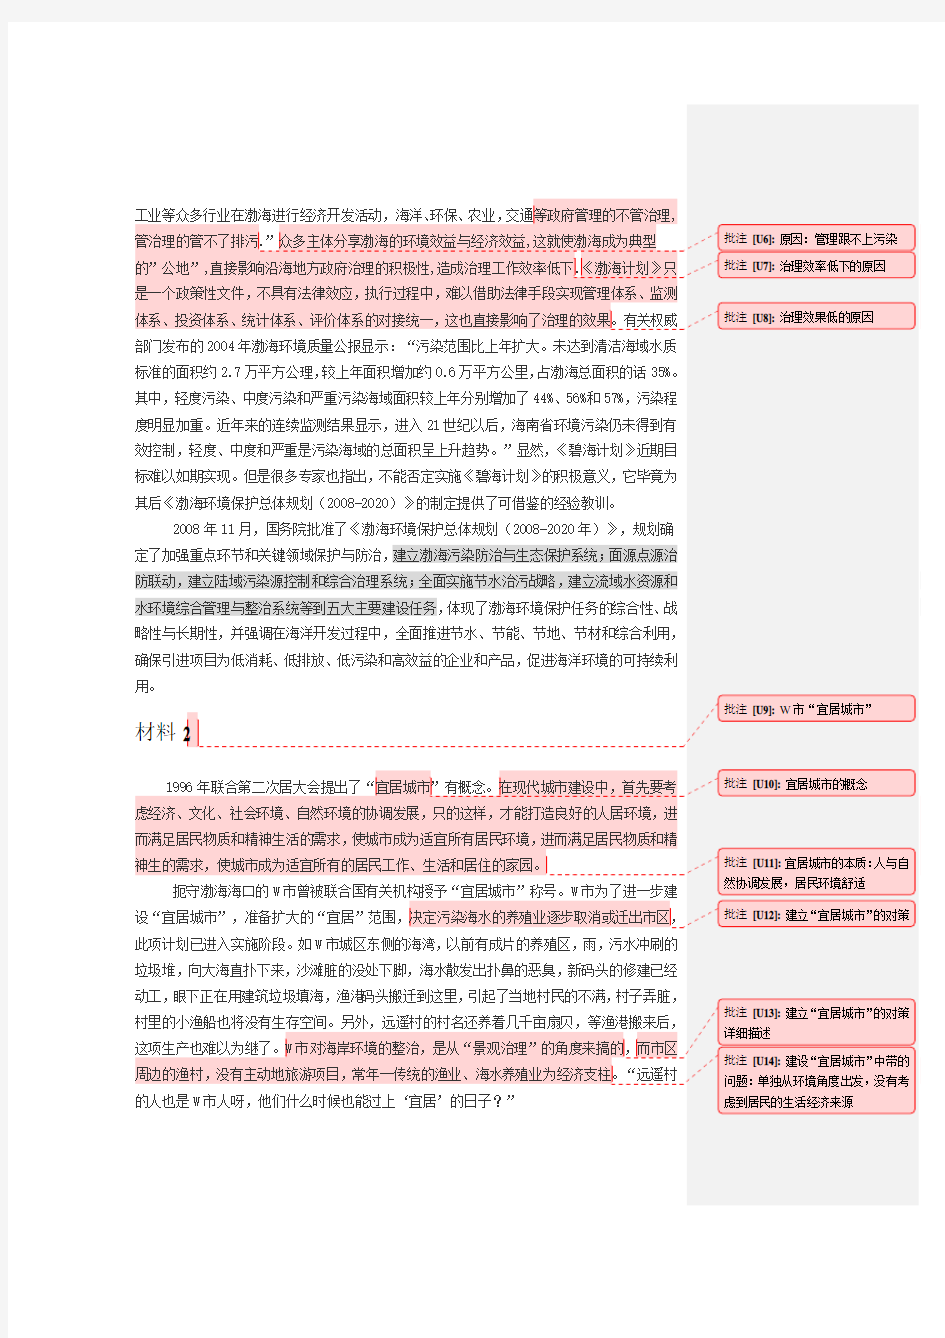 国家公务员2010 申论(地市级) 真题参考答案解答过程 --华图 刘其辉